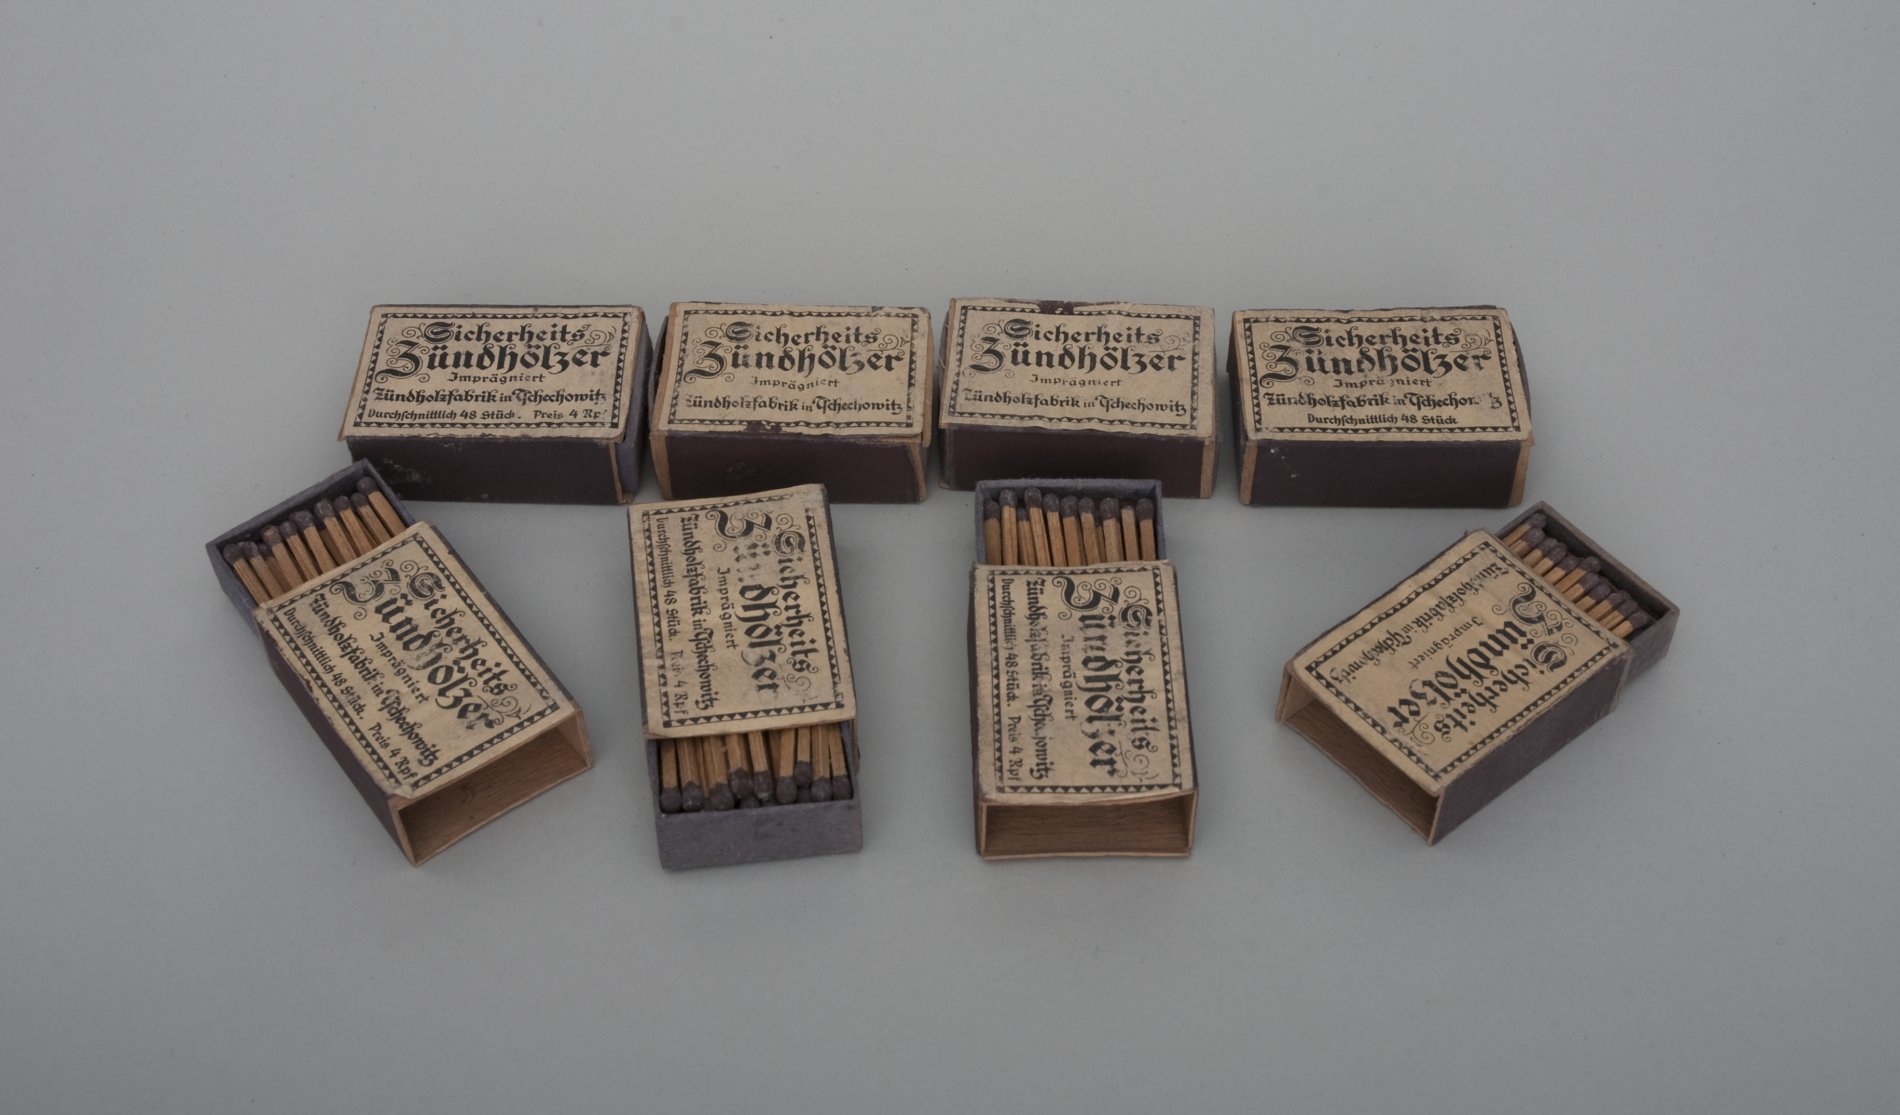 Acht Schachteln "Sicherheits Zündhölzer" (Stiftung Domäne Dahlem - Landgut und Museum, Weiternutzung nur mit Genehmigung des Museums CC BY-NC-SA)